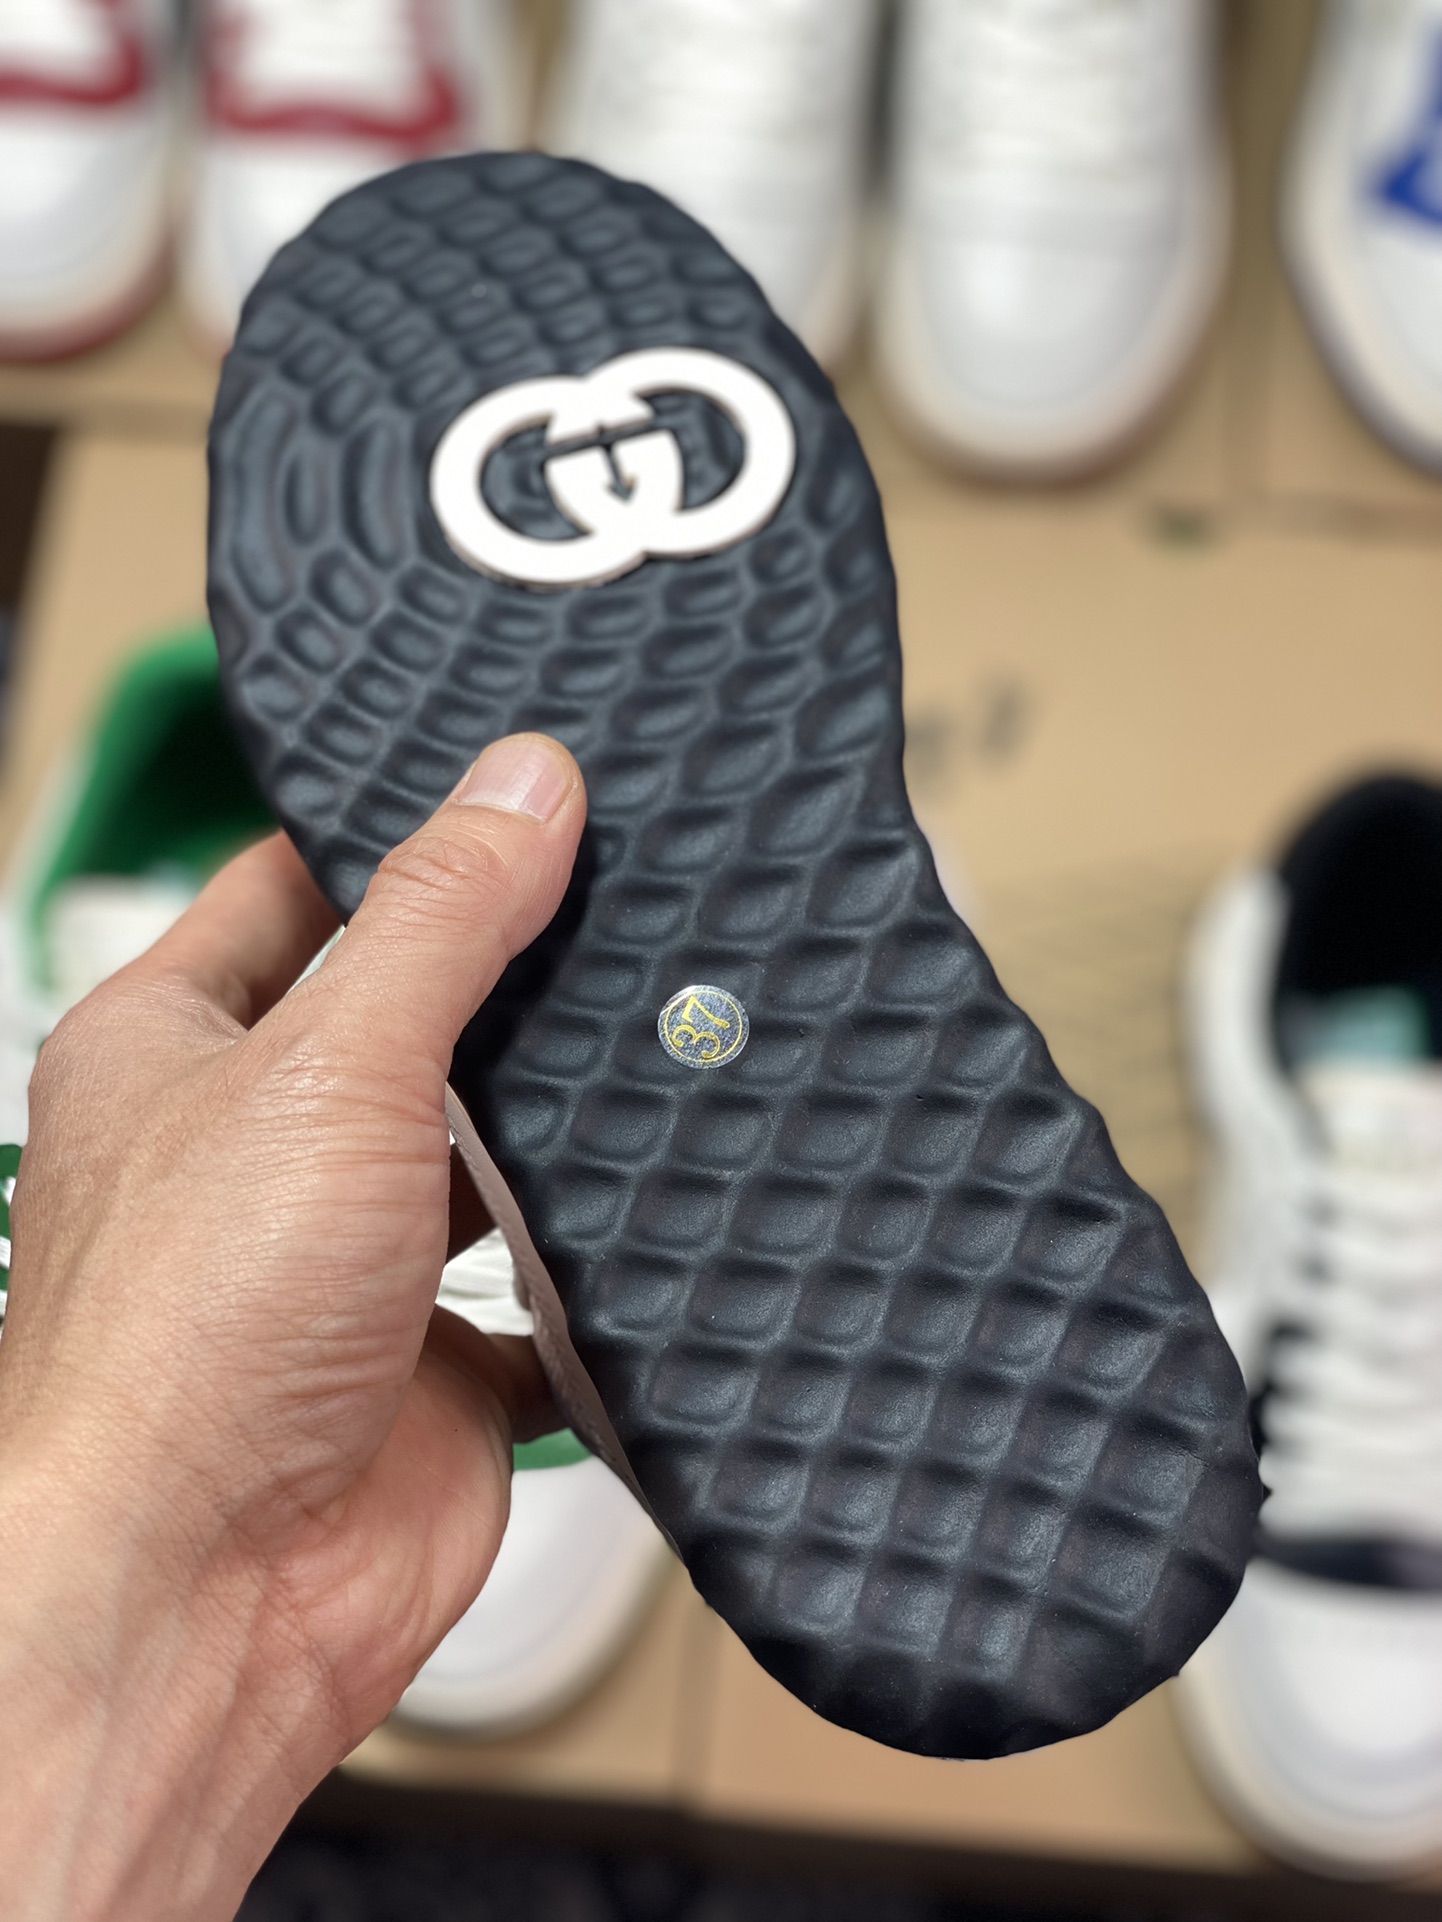 Gucci Mac 80 Low Sneaker series low-top retro sneakers 